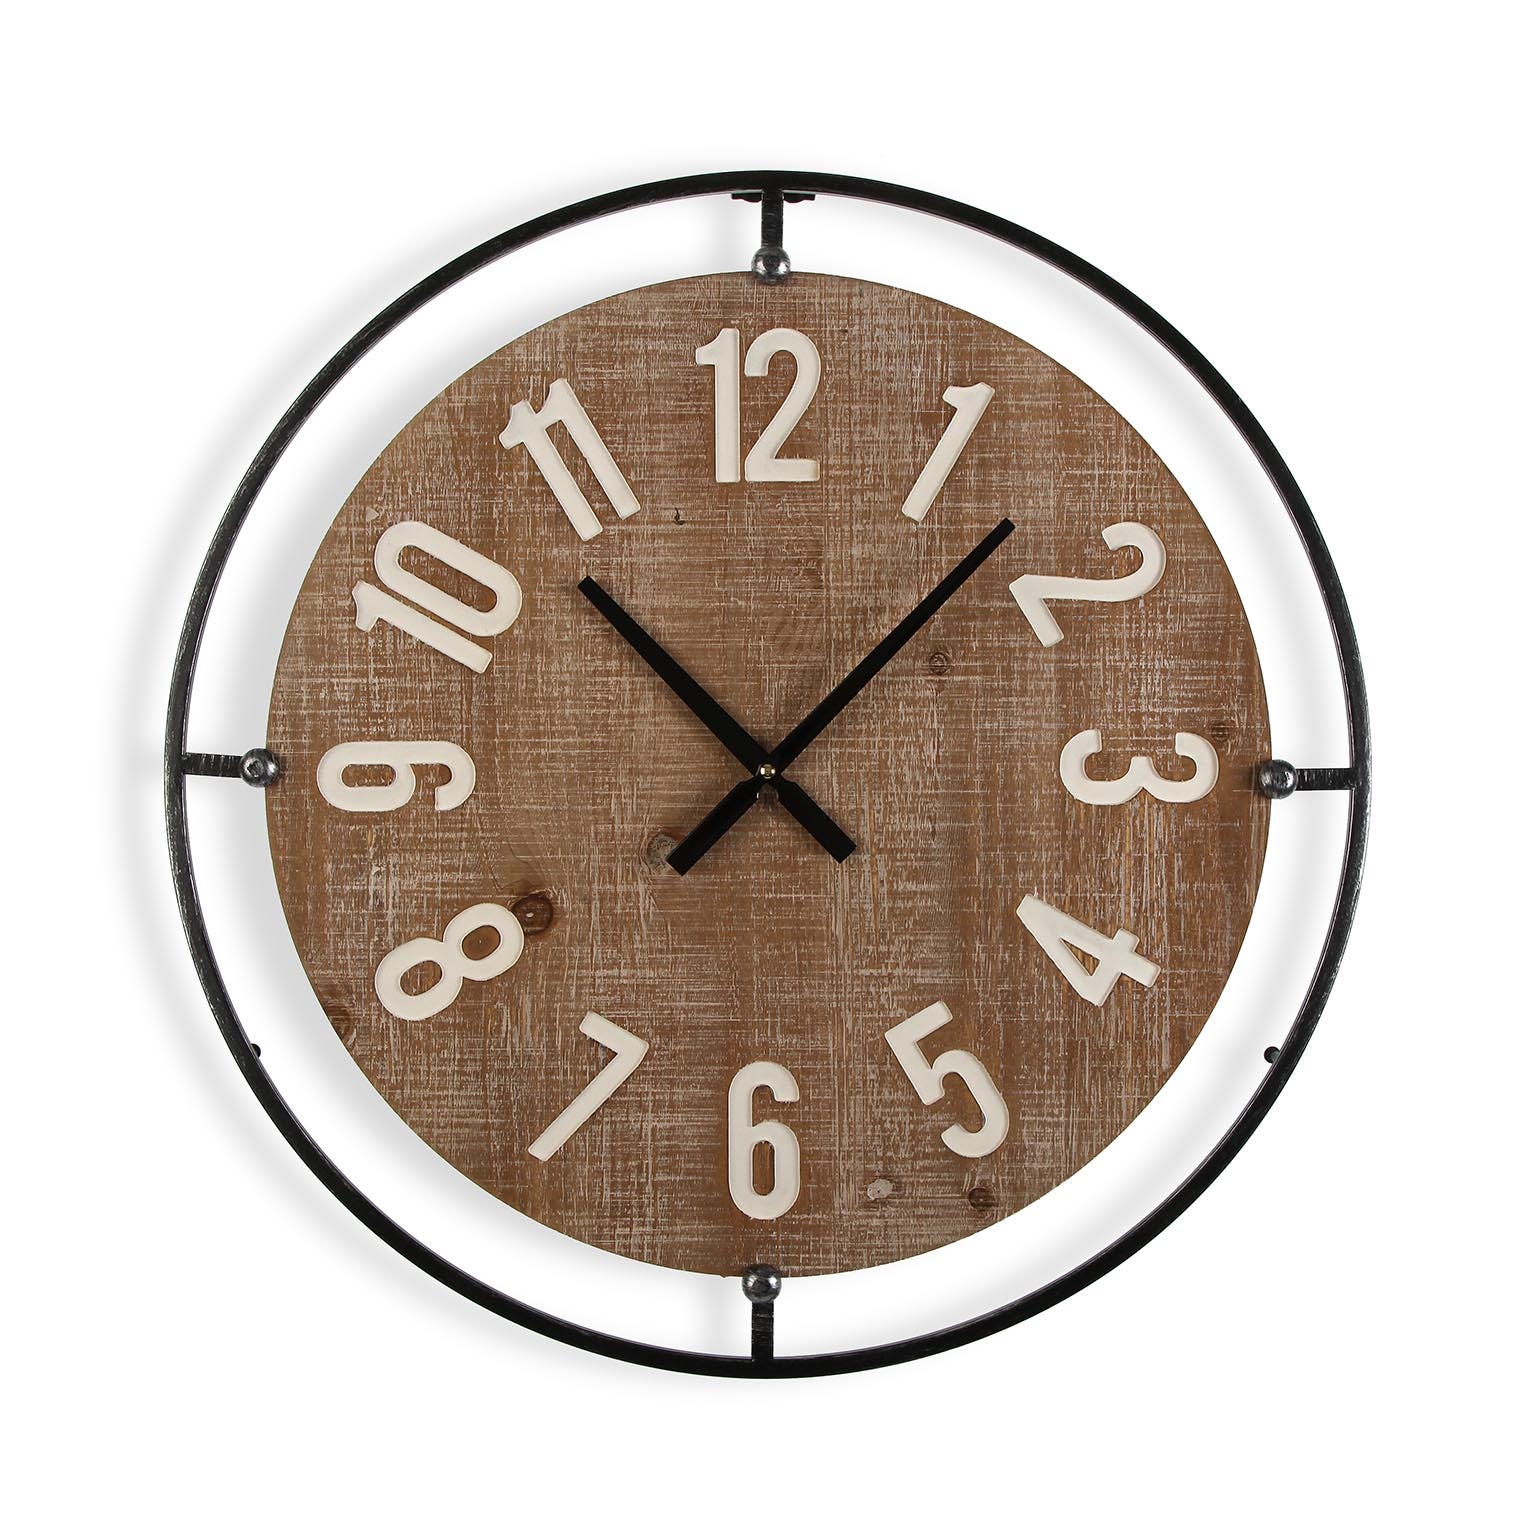 Versa Edsom Reloj de Pared Decorativo para la Cocina, el Salón, el Comedor  o la Habitación